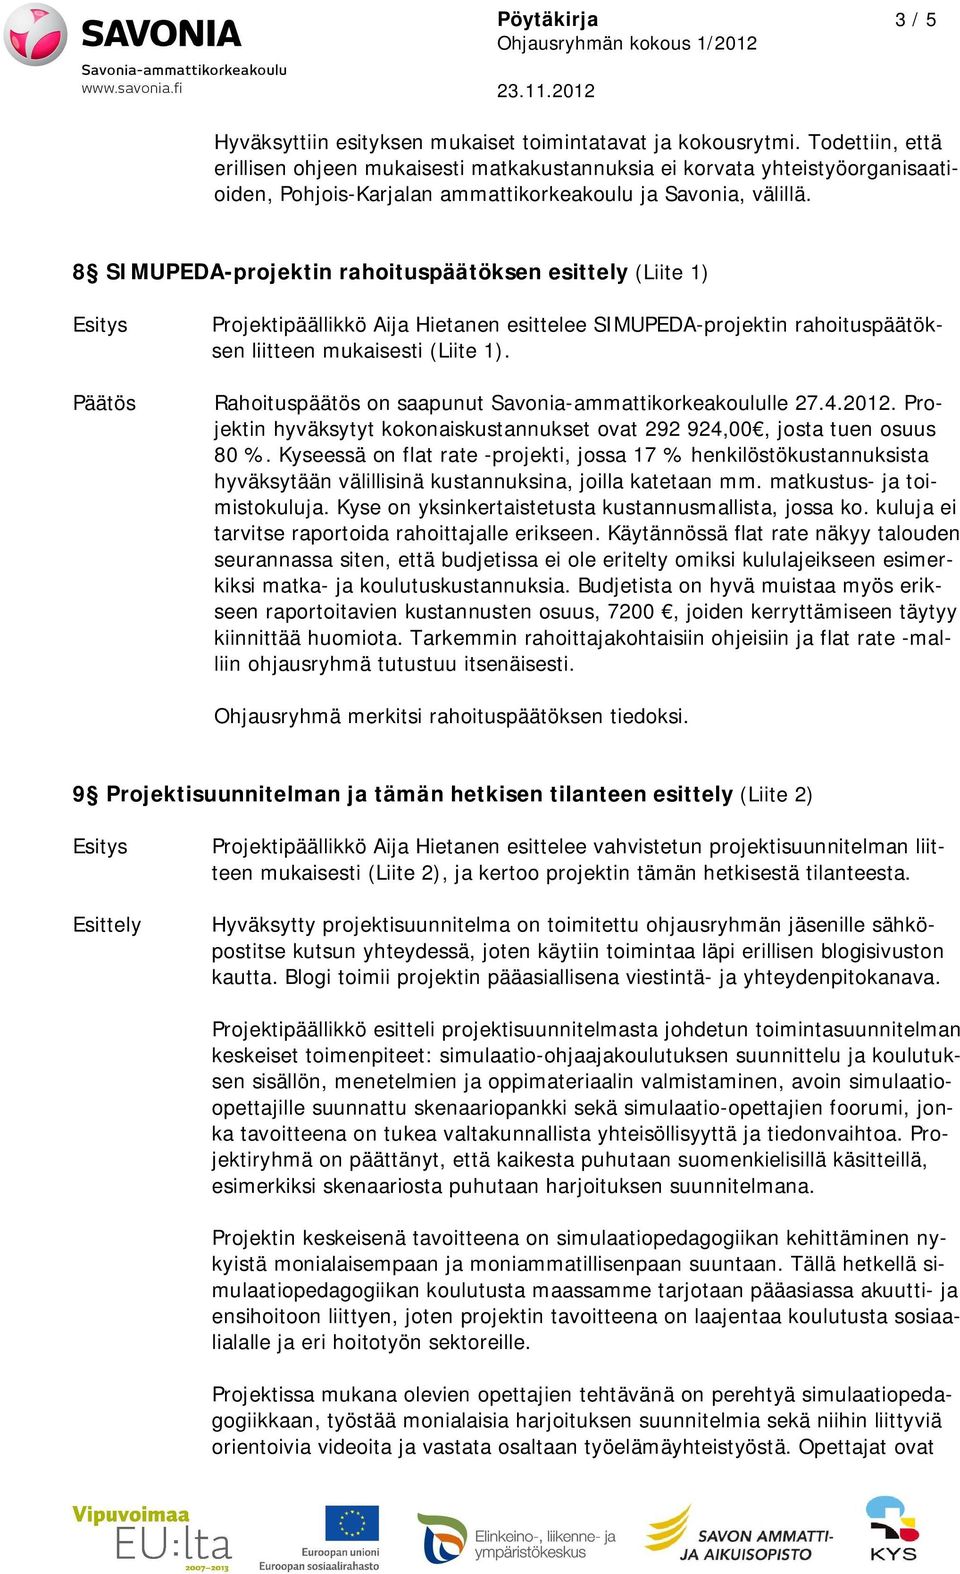 8 SIMUPEDA-projektin rahoituspäätöksen esittely (Liite 1) Projektipäällikkö Aija Hietanen esittelee SIMUPEDA-projektin rahoituspäätöksen liitteen mukaisesti (Liite 1).